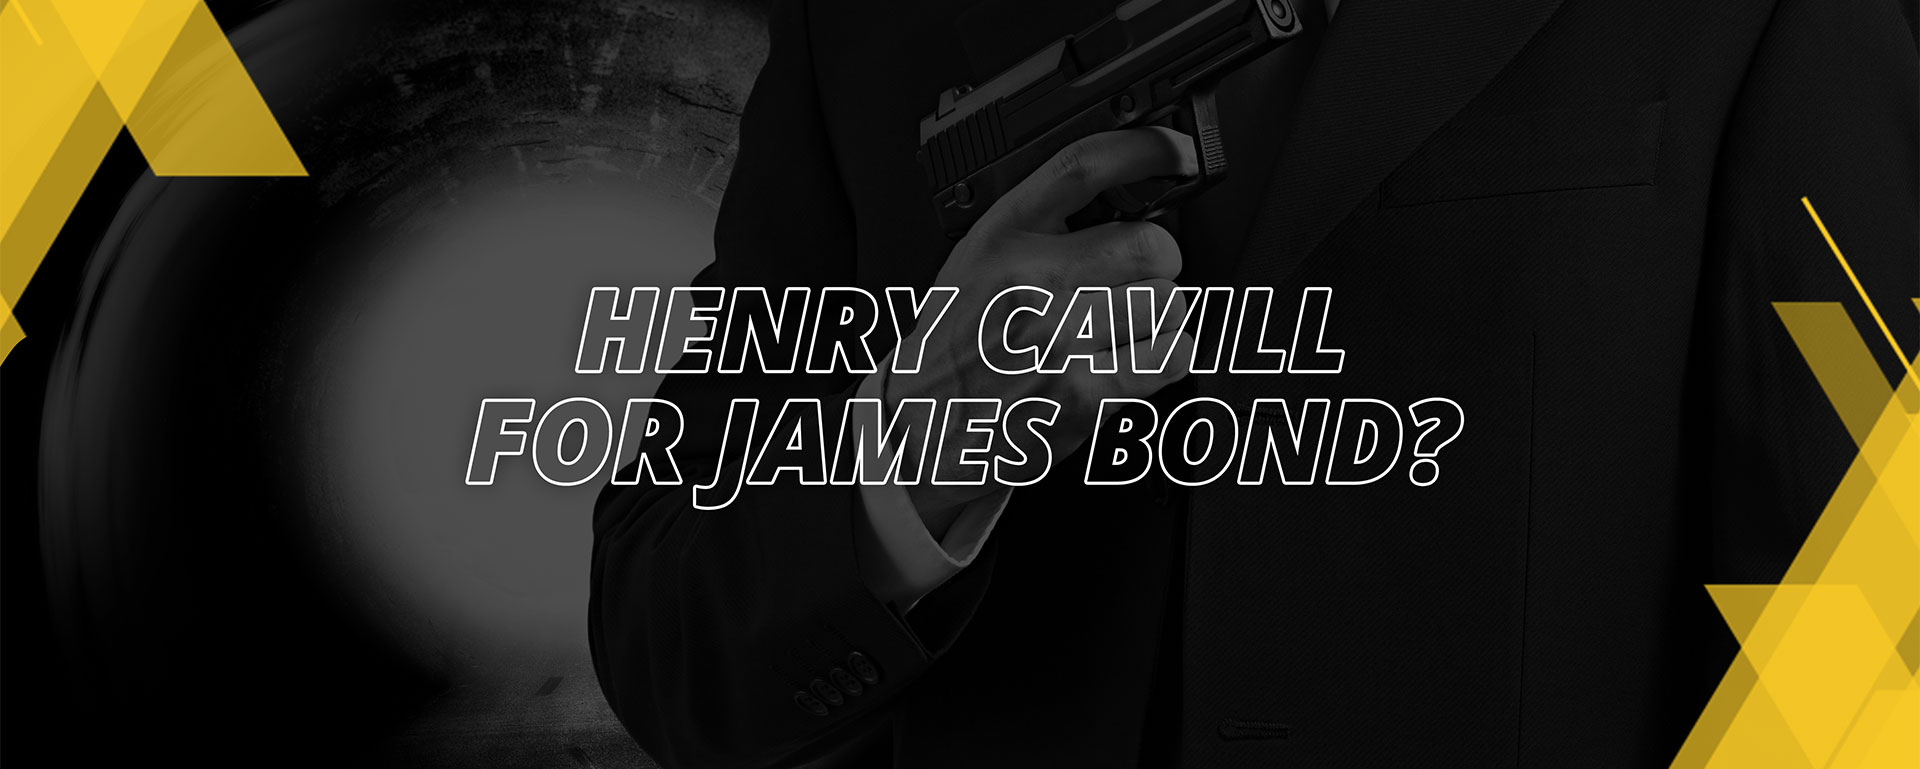 HENRY CAVILL FOR JAMES BOND?